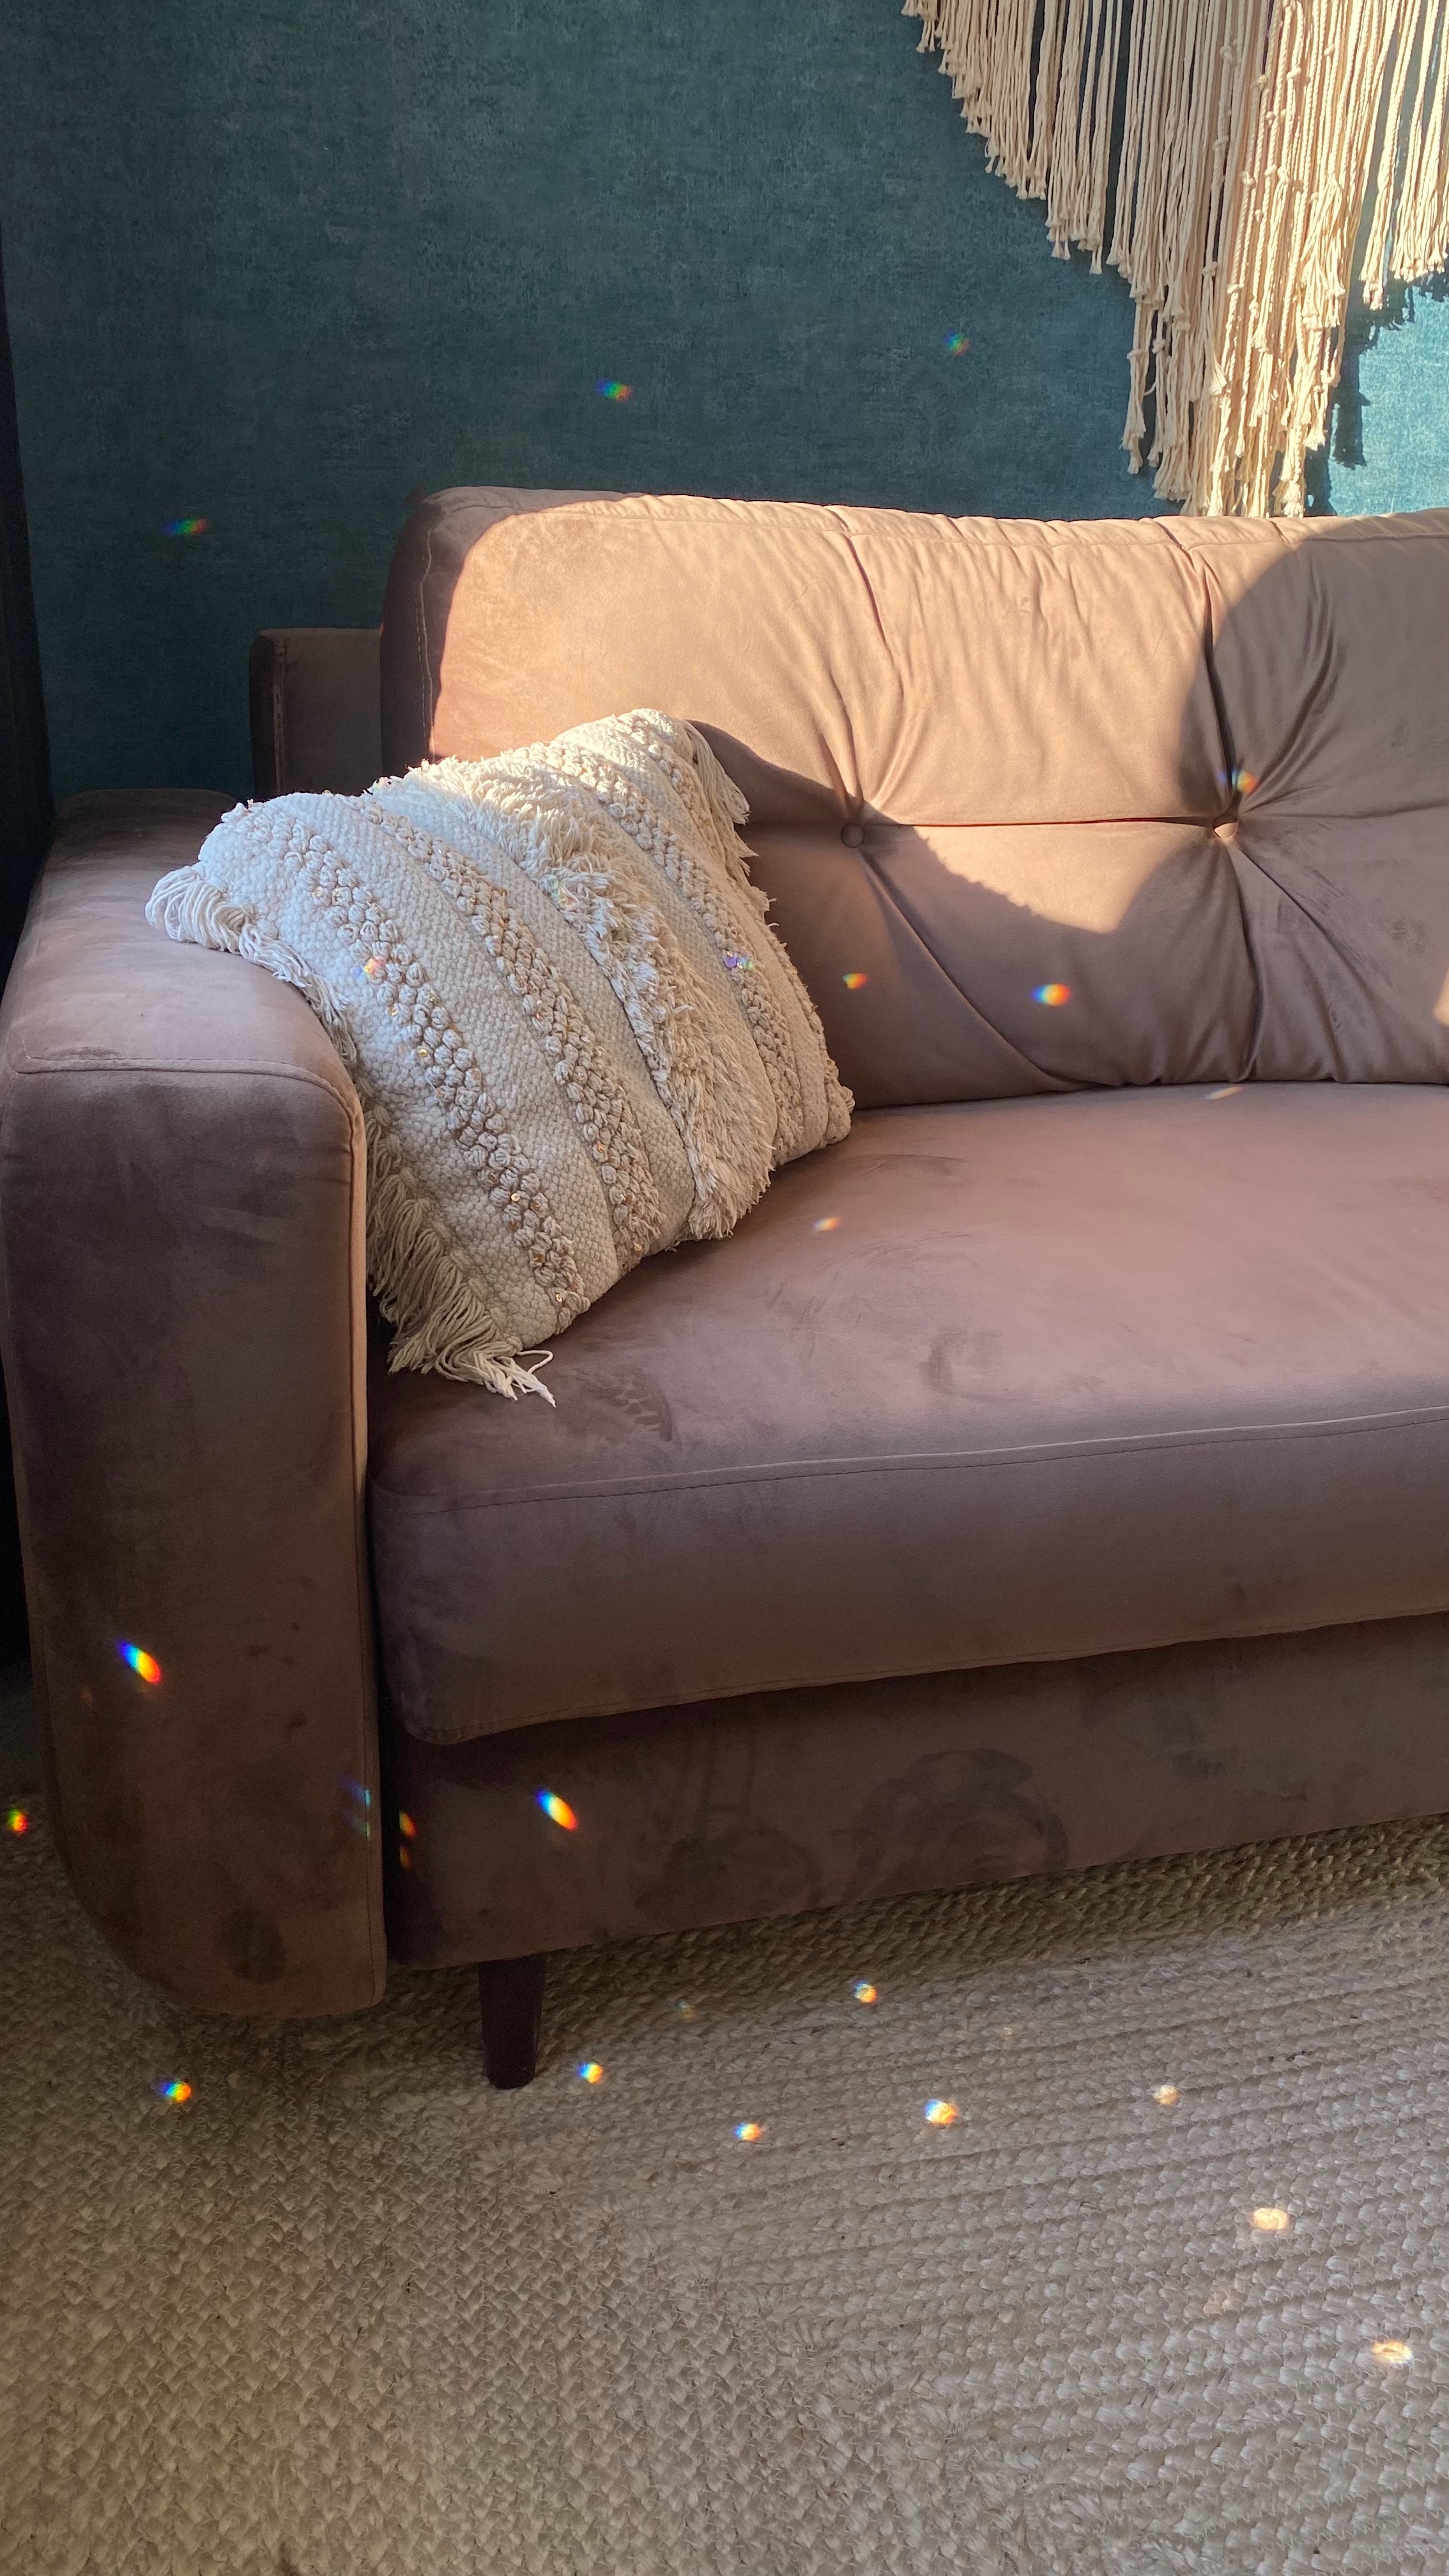 Пример дивана в стиле хюгге — мягкая обивка, стильная подушка, теплый и уютный вид.